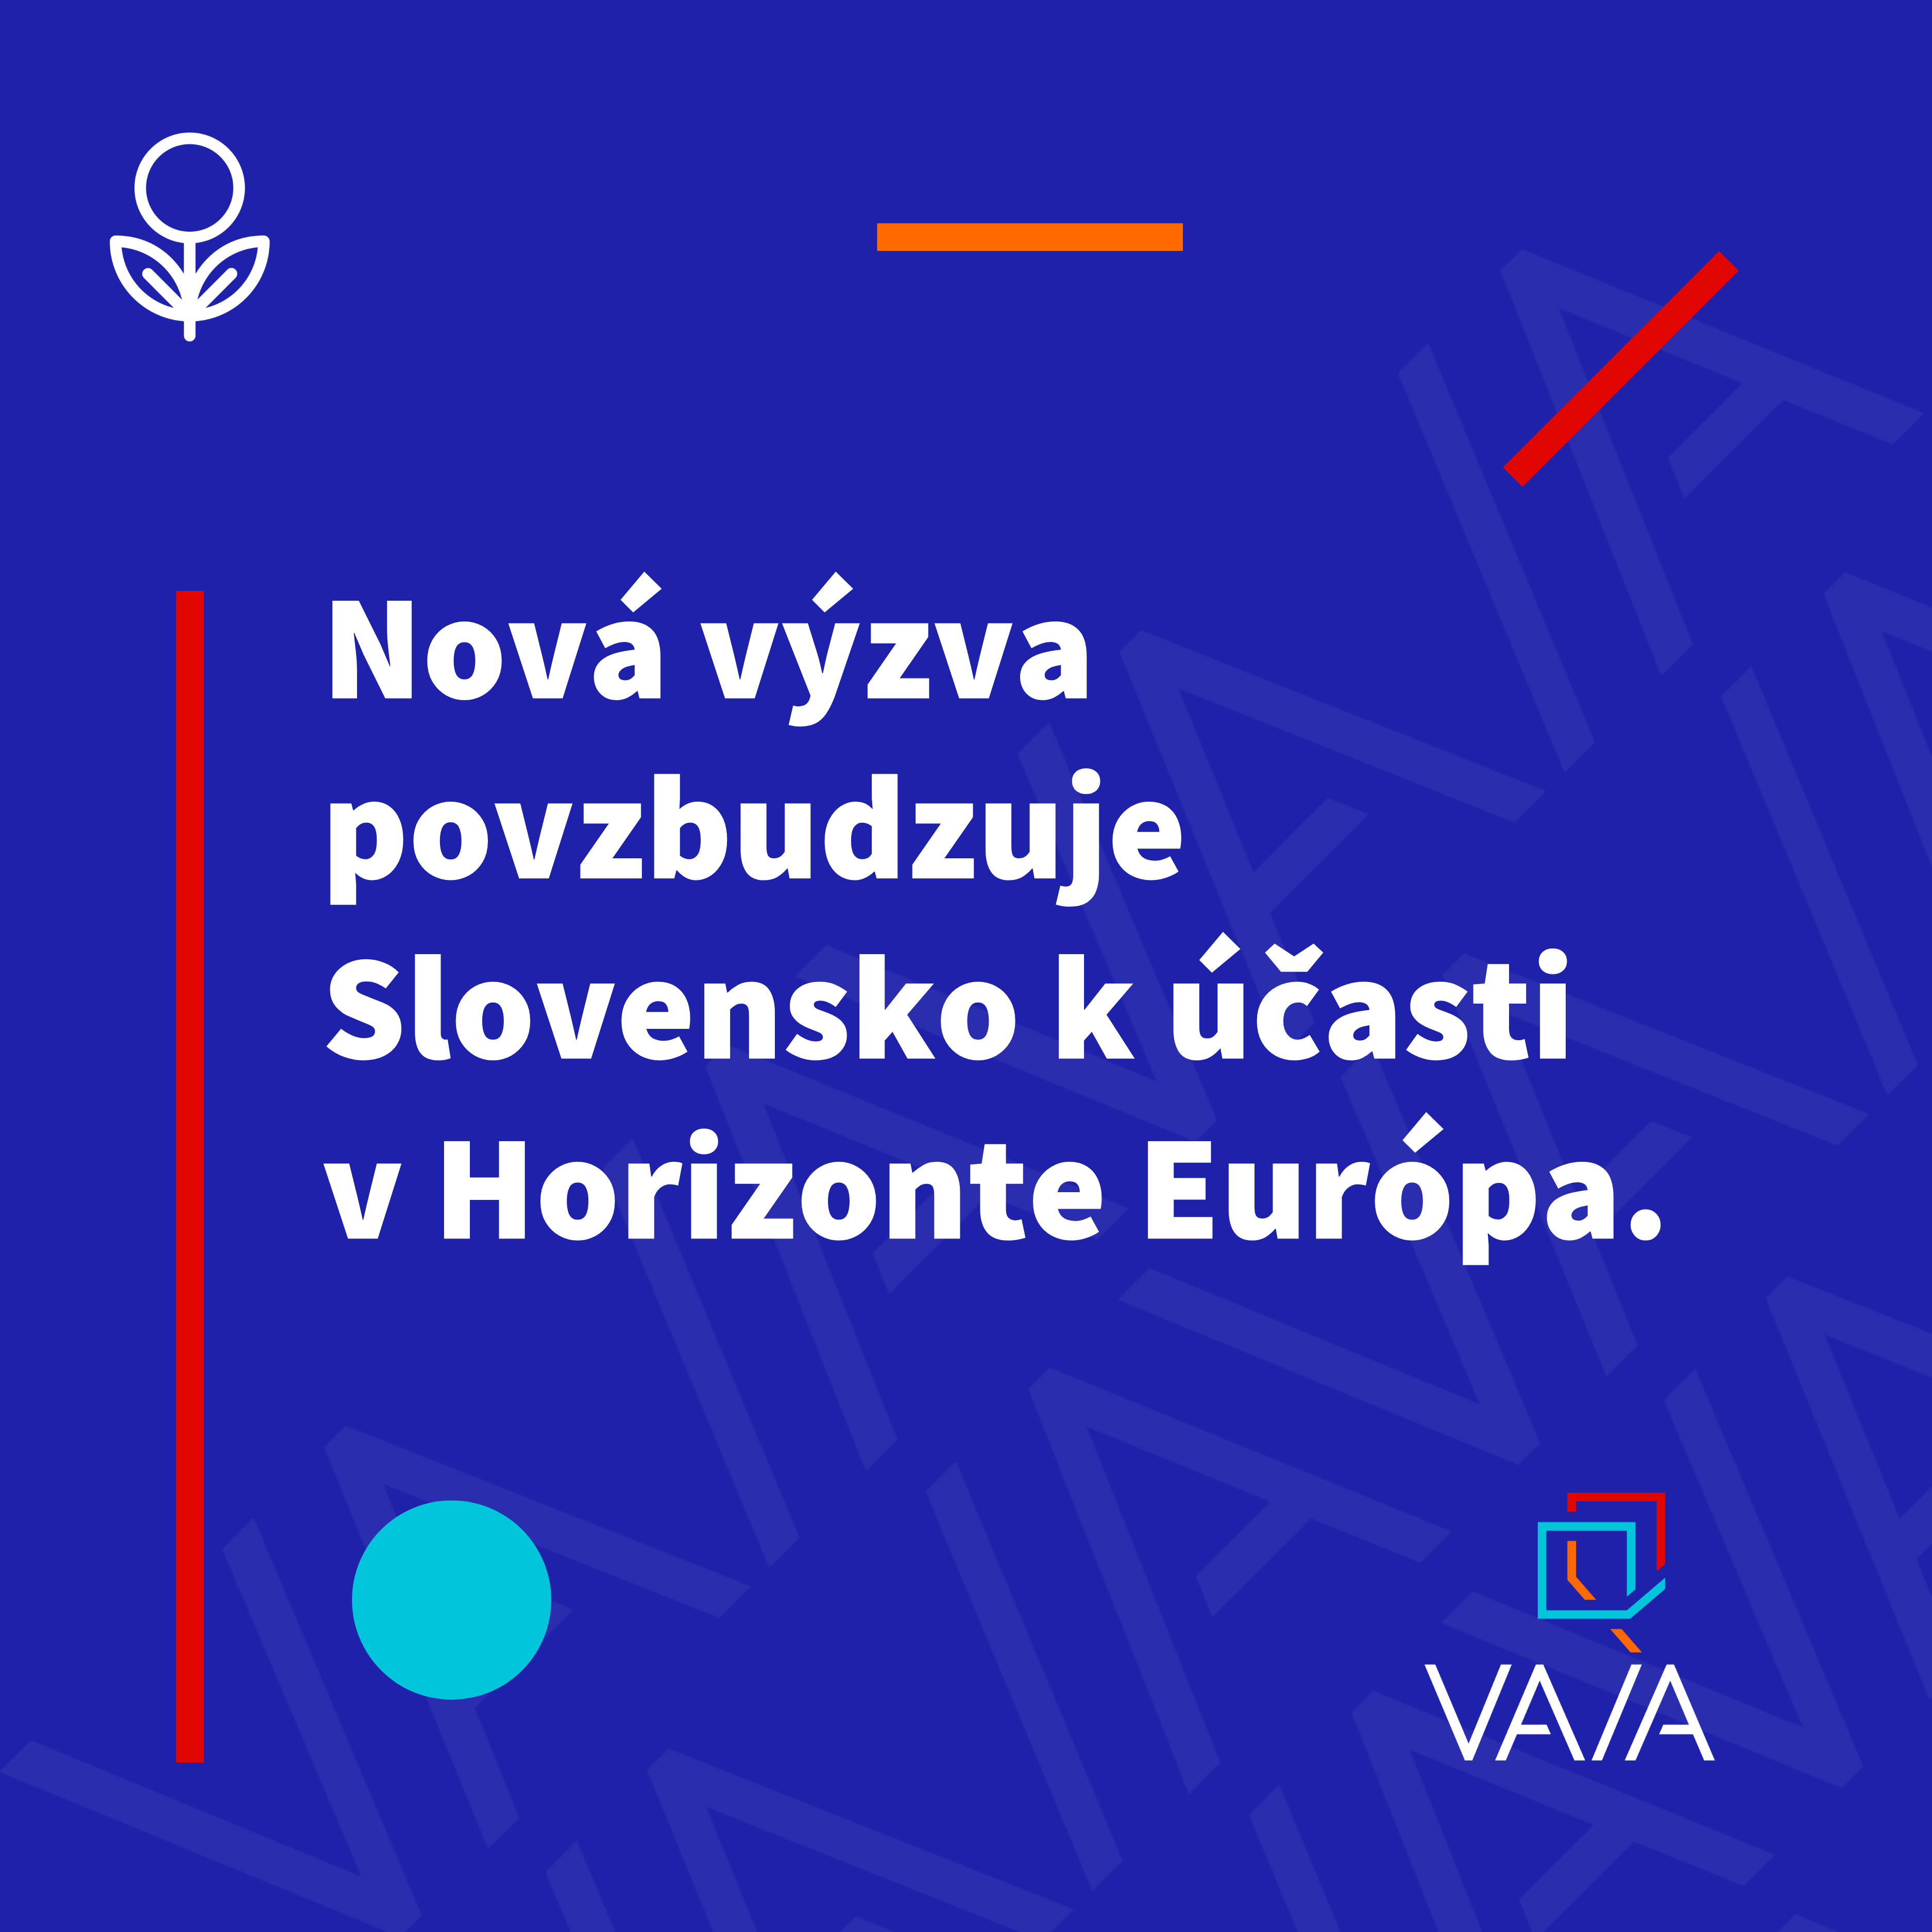 Vyhlásili sme novú výzvu, cieľom je povzbudiť účasť Slovenska v programoch Horizontu Európa